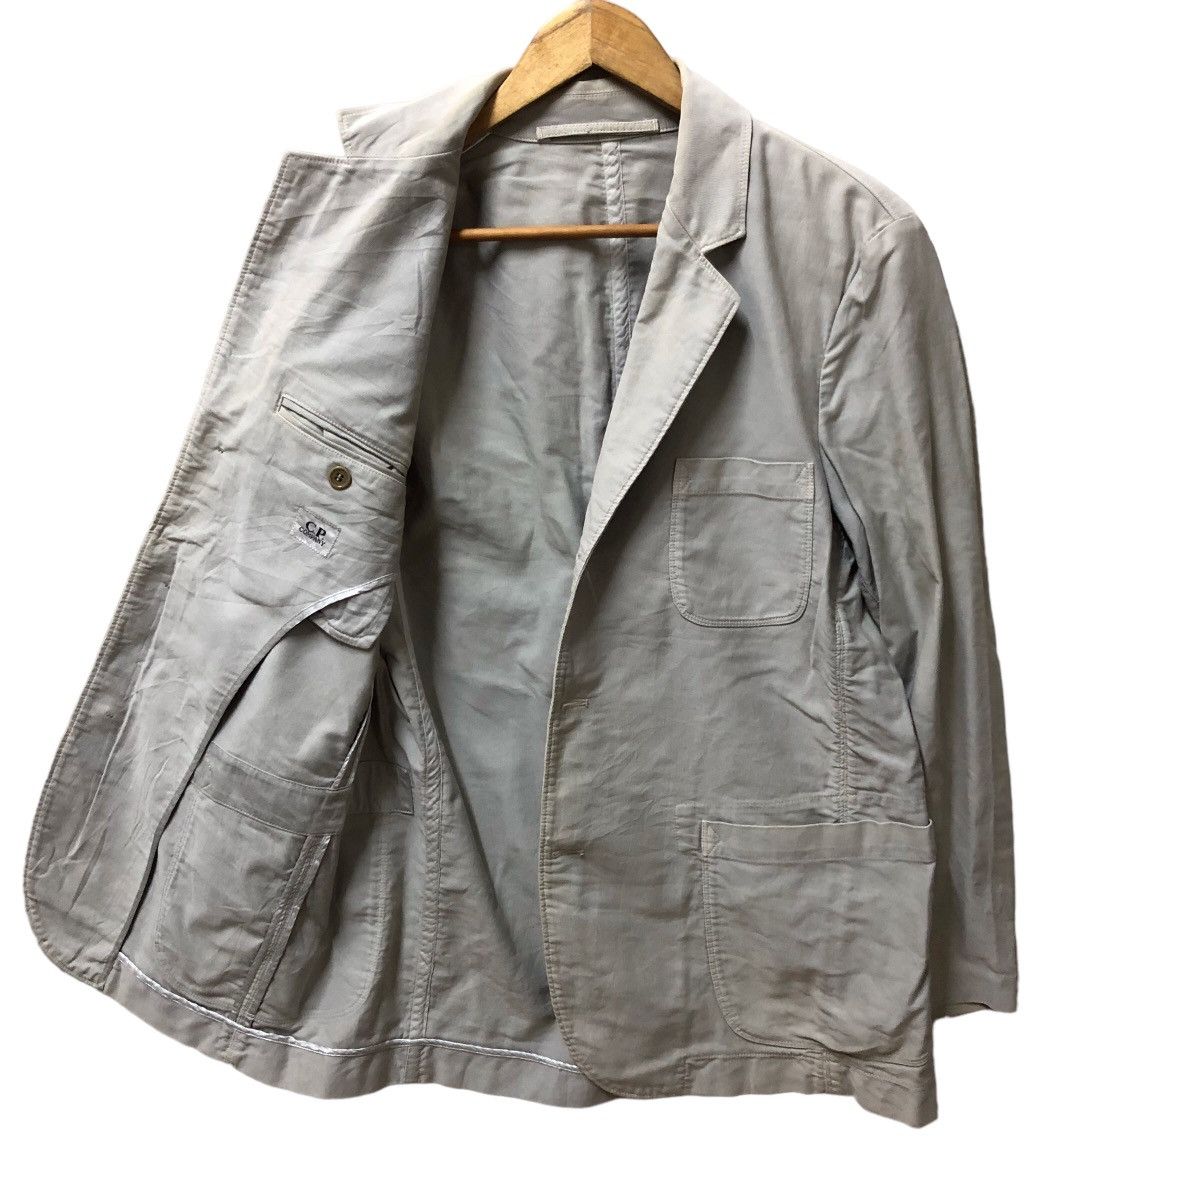 Vintage c.p company cotton suit jacket - 1